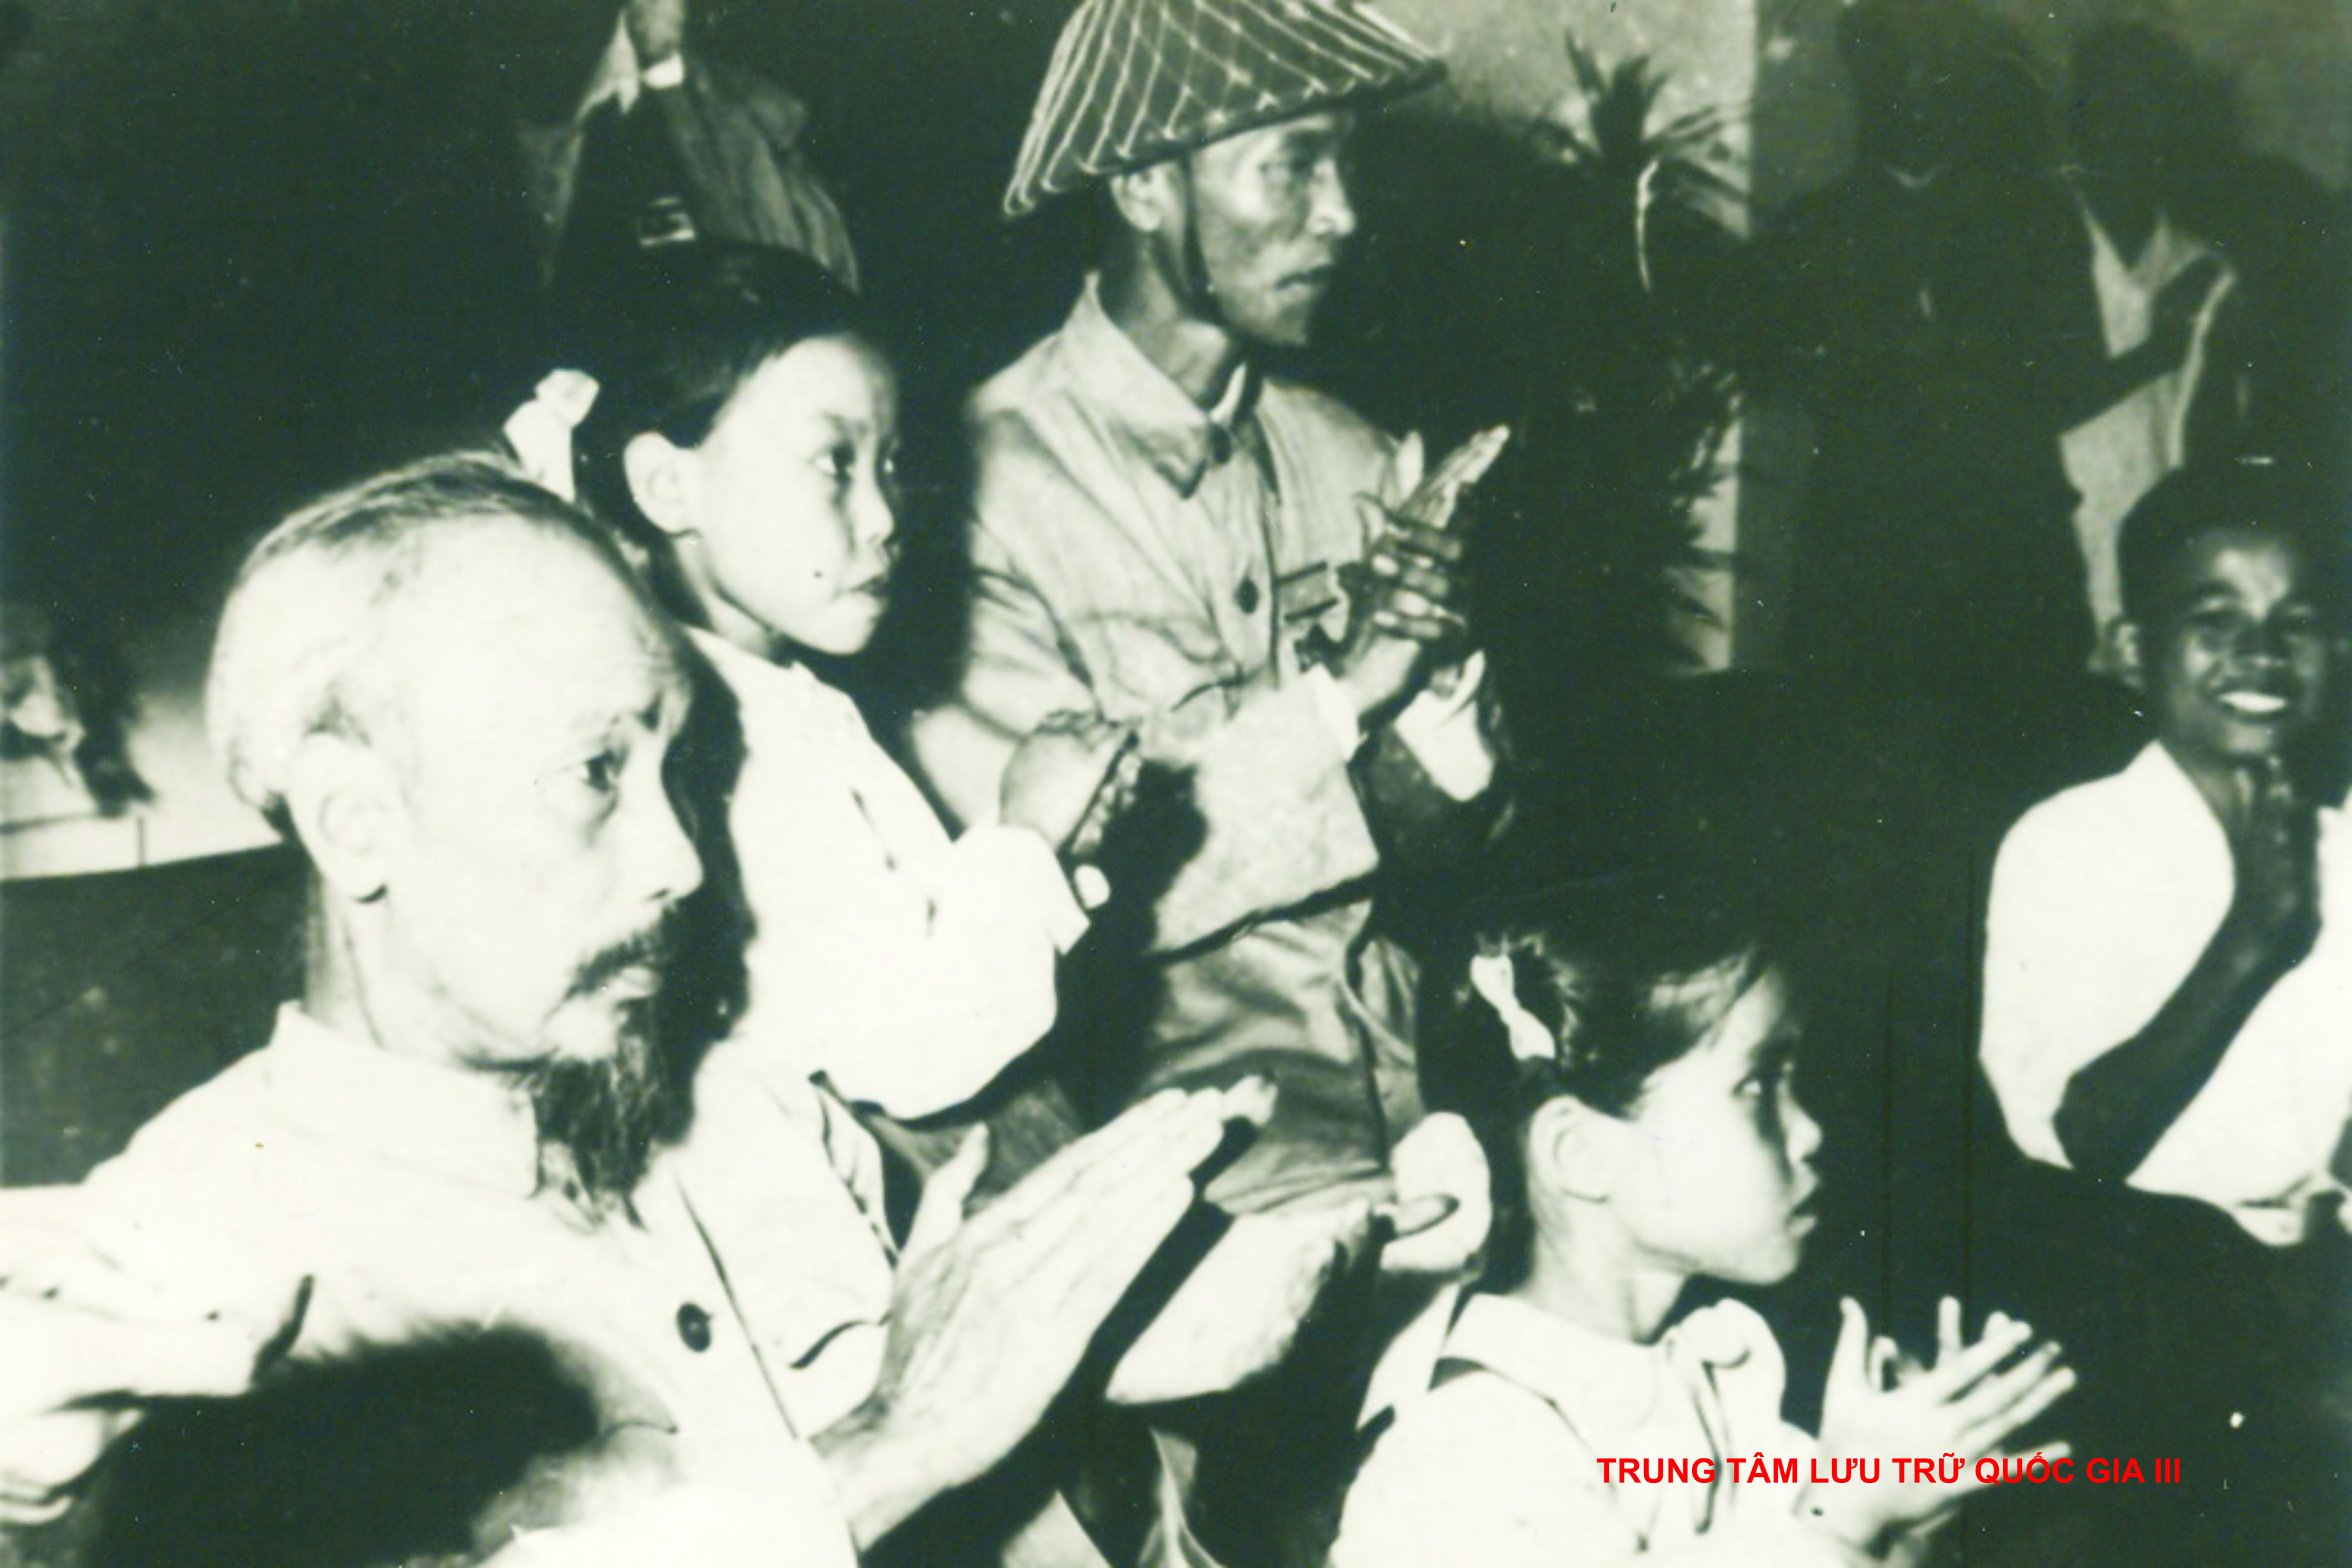 Ôn lại không khí hào hùng của thủ đô Hà Nội ngày giải phóng 10/10/1954